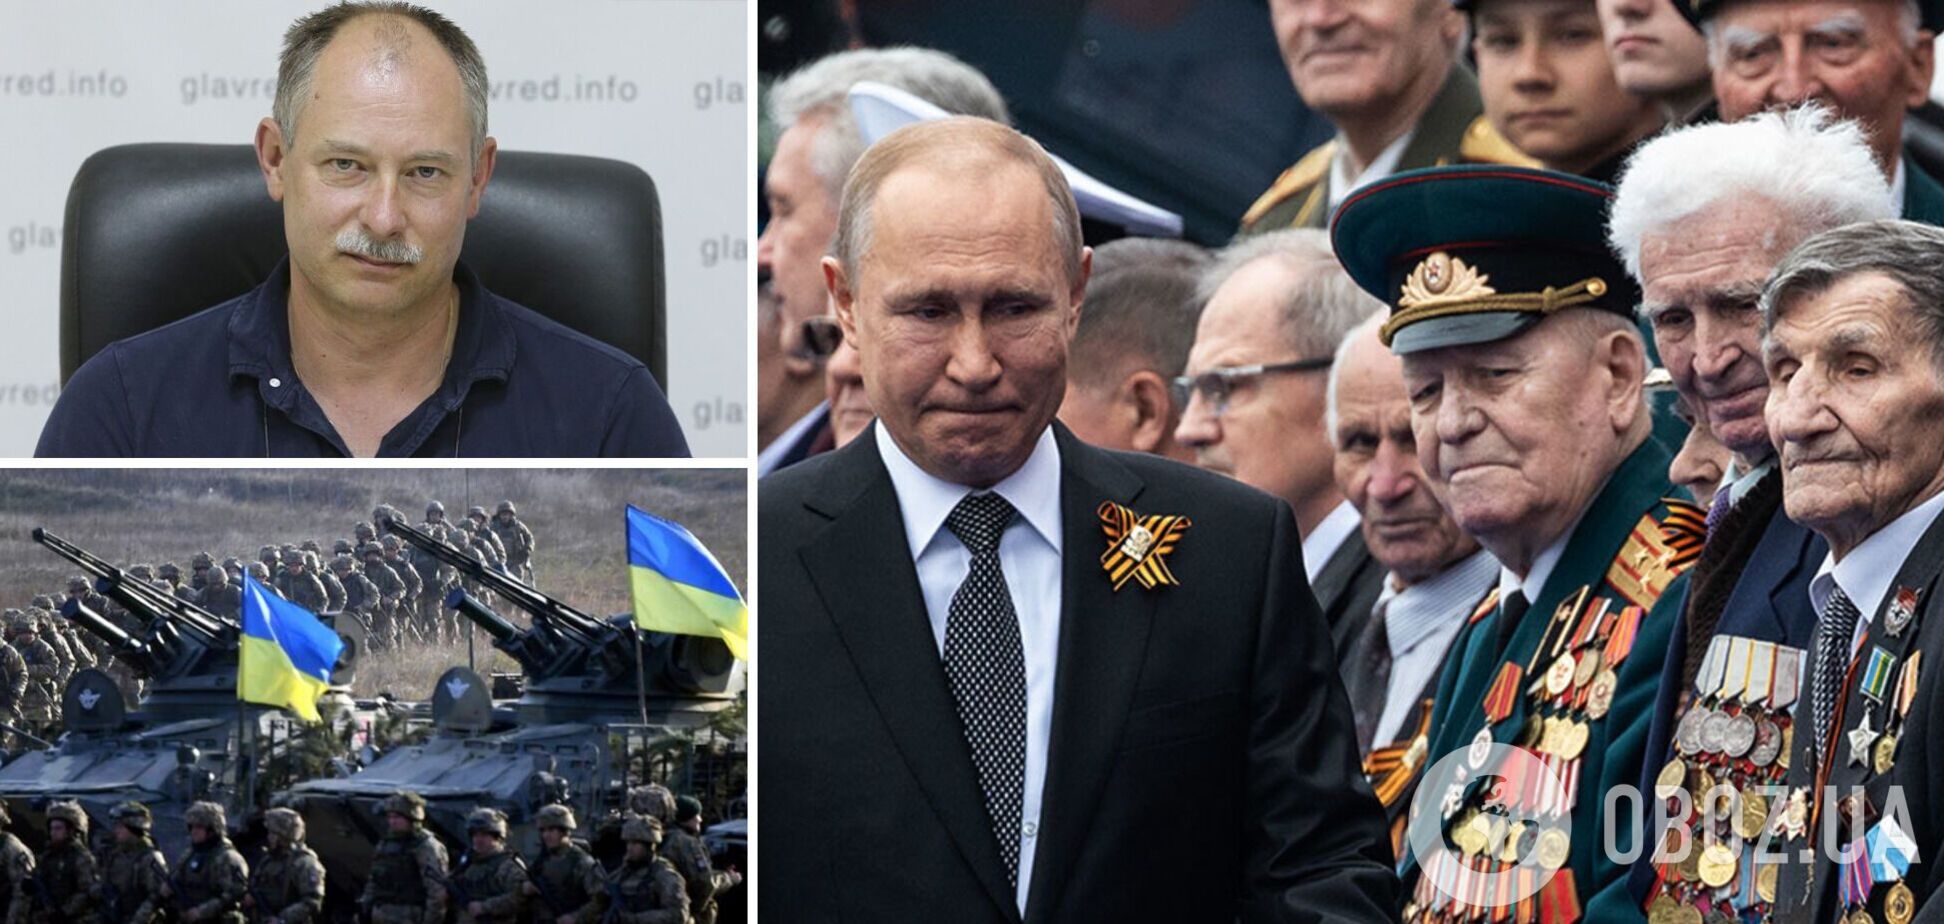 Жданов: Путін готовий покласти пів країни в Україні, повний розгром його армії близький. Інтерв'ю